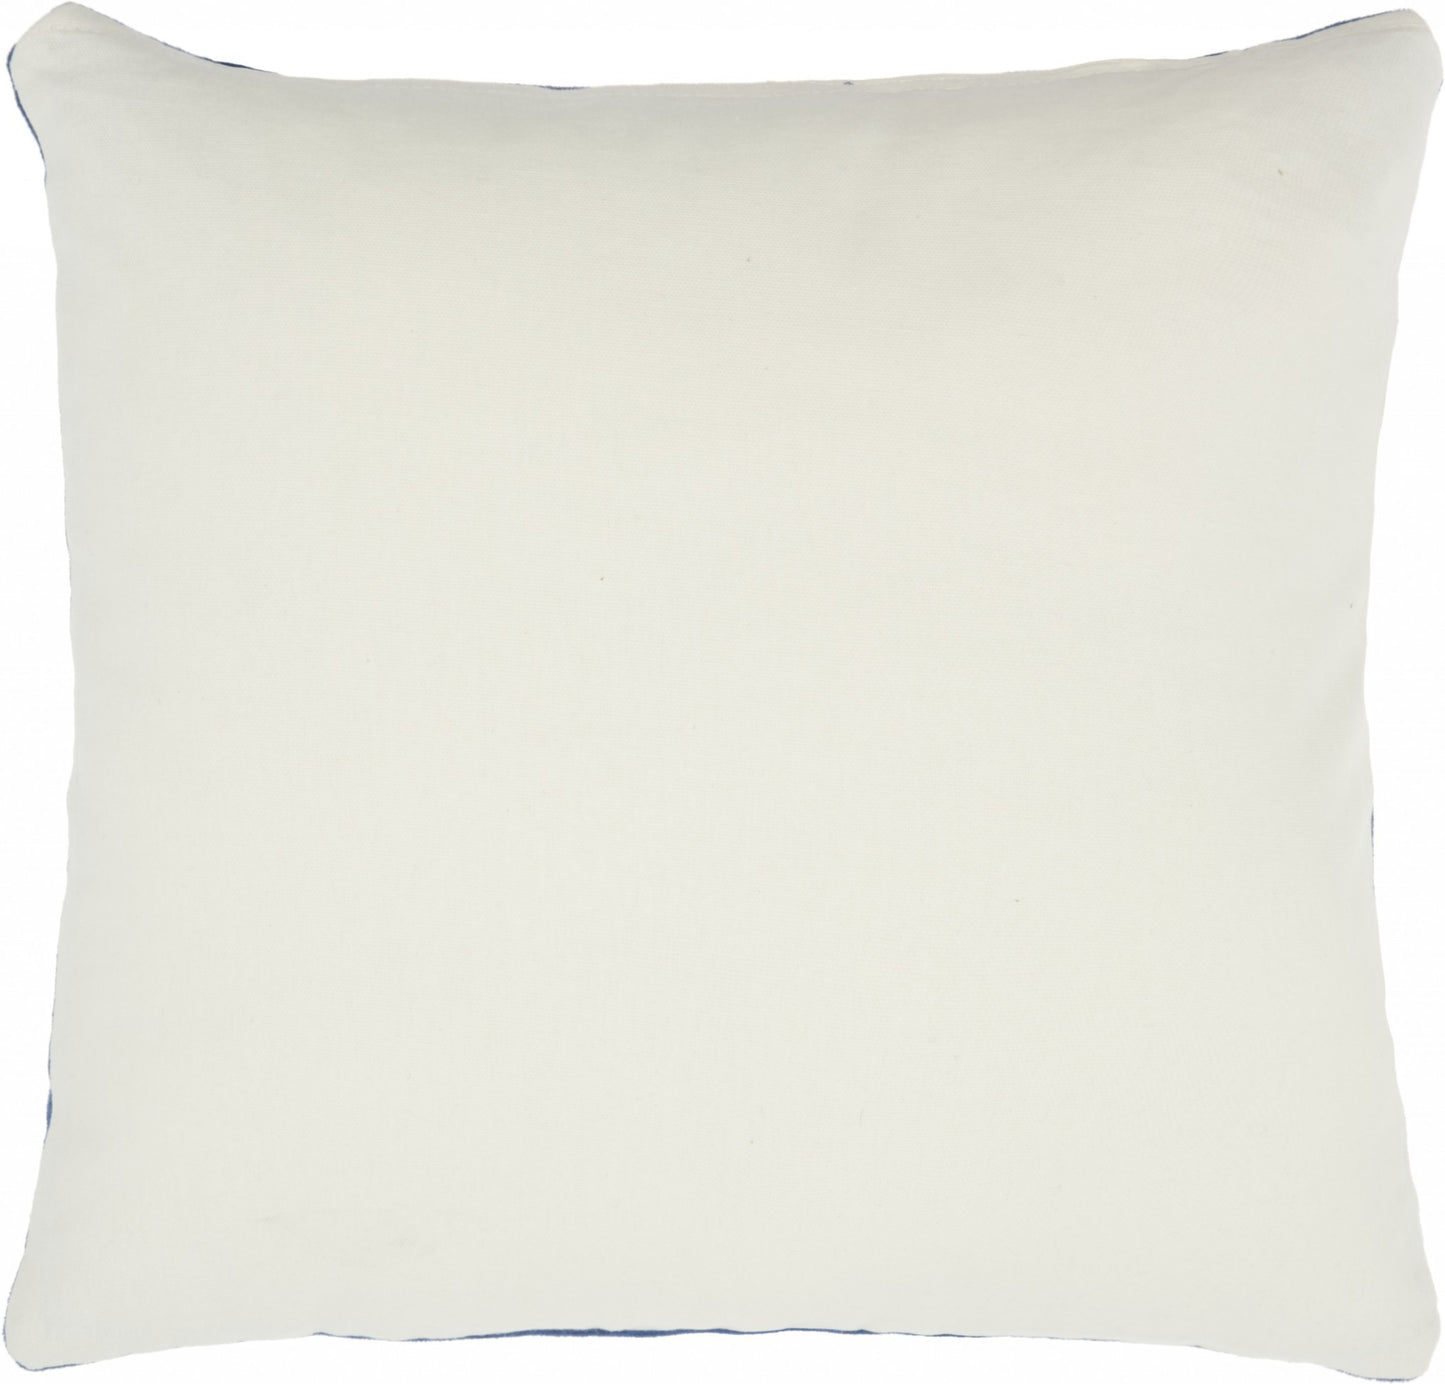 Navy Velvet Modern Throw Pillow